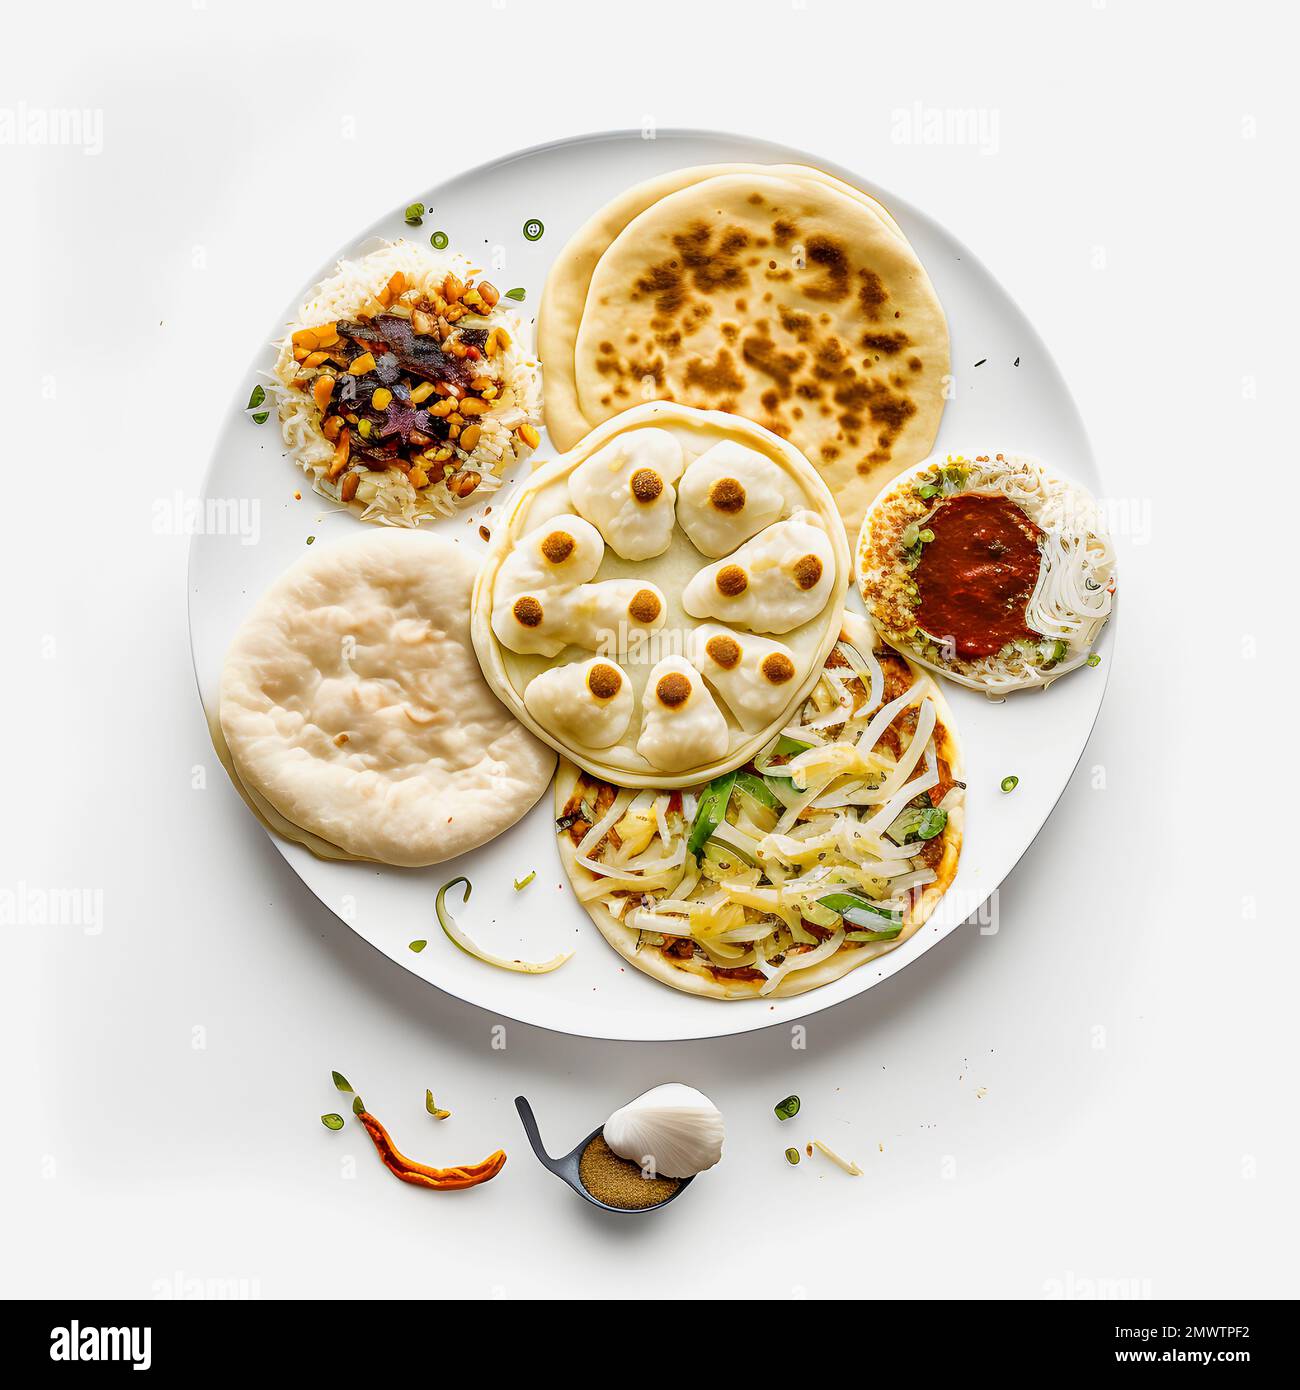 Pupusas auf weißem Hintergrund-Nahrungsmittelfotografie. Hochwertige Bilder halten die traditionellen Aromen und Texturen dieses beliebten Street Food in einem modernen Ambiente fest Stockfoto